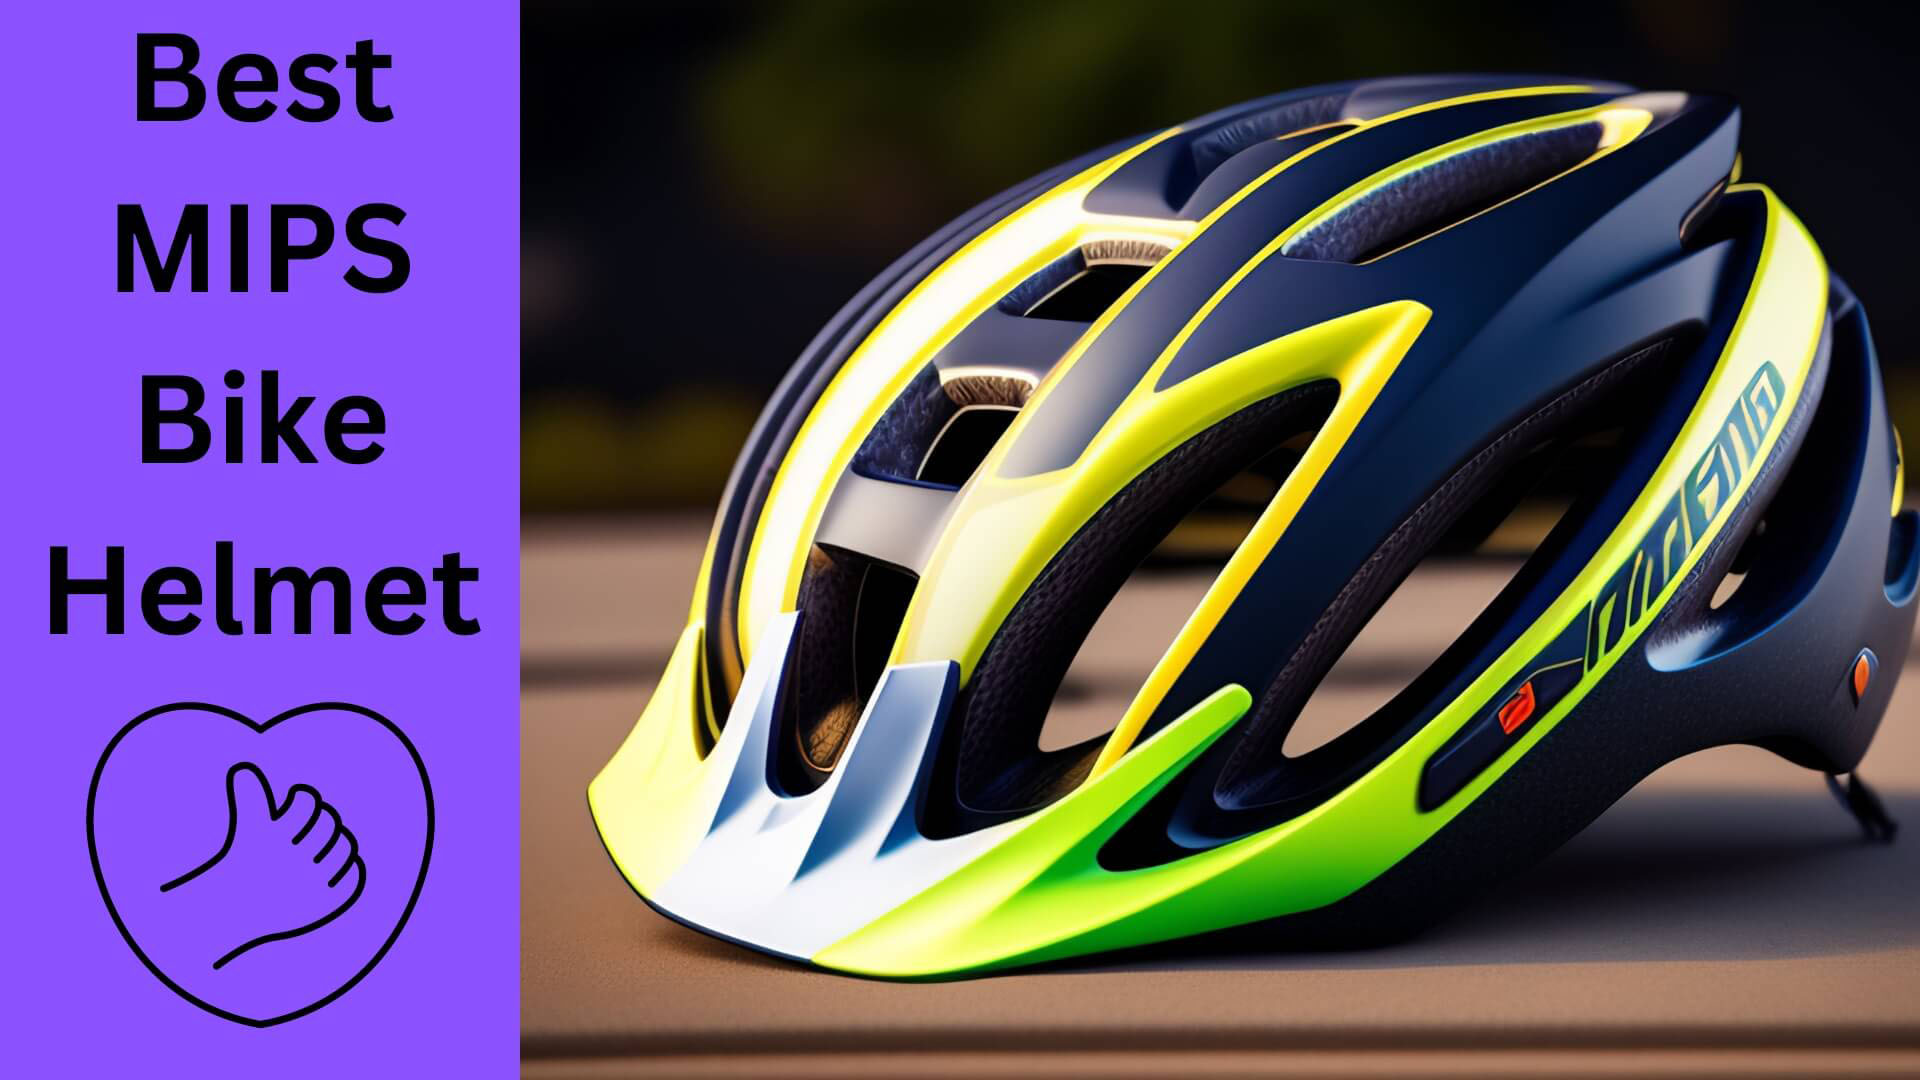 Best MIPS Bike Helmet